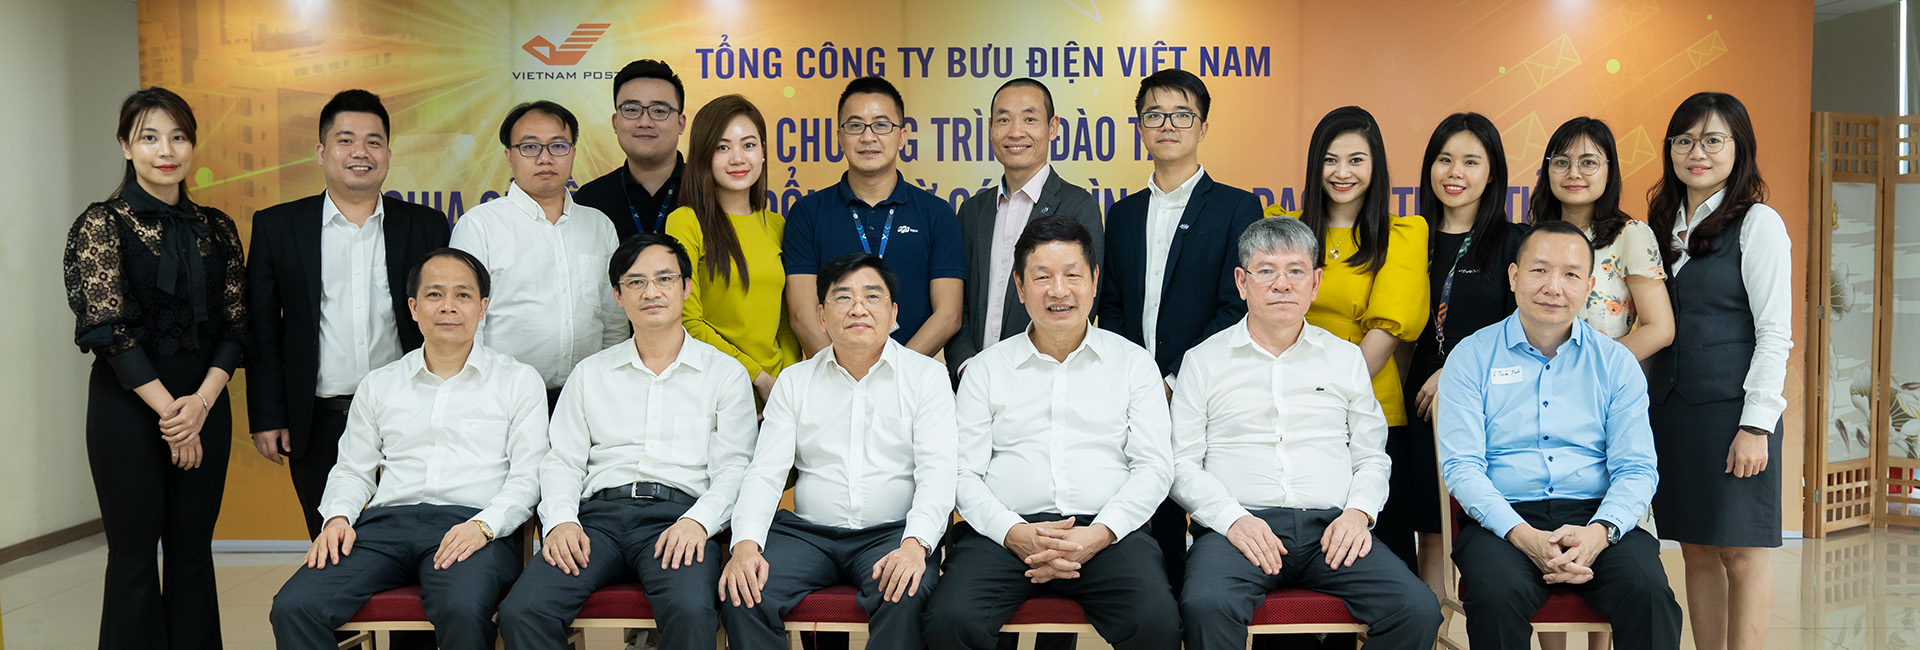 Hội thảo về chuyển đổi số tại Tổng công ty Bưu điện Việt Nam – Vietnam Post